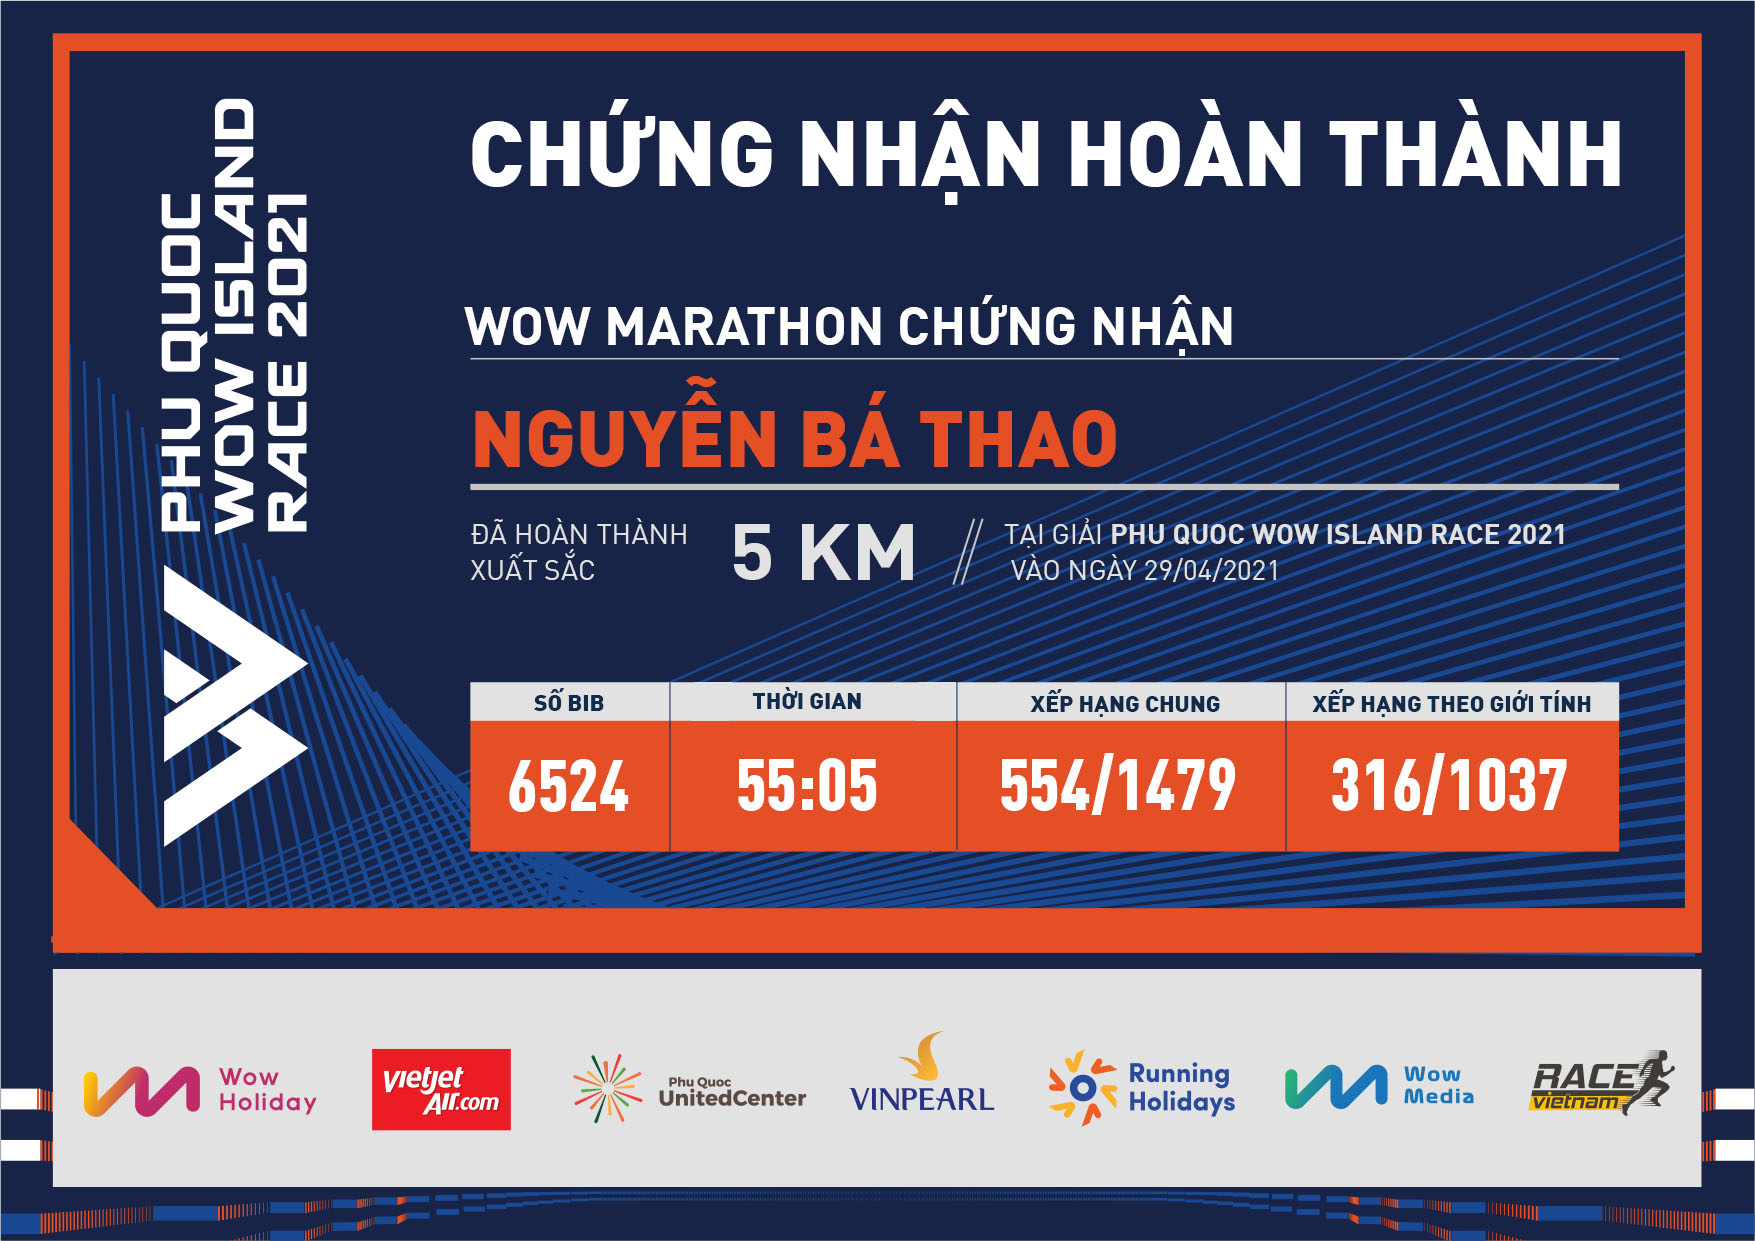 6524 - Nguyễn Bá Thao